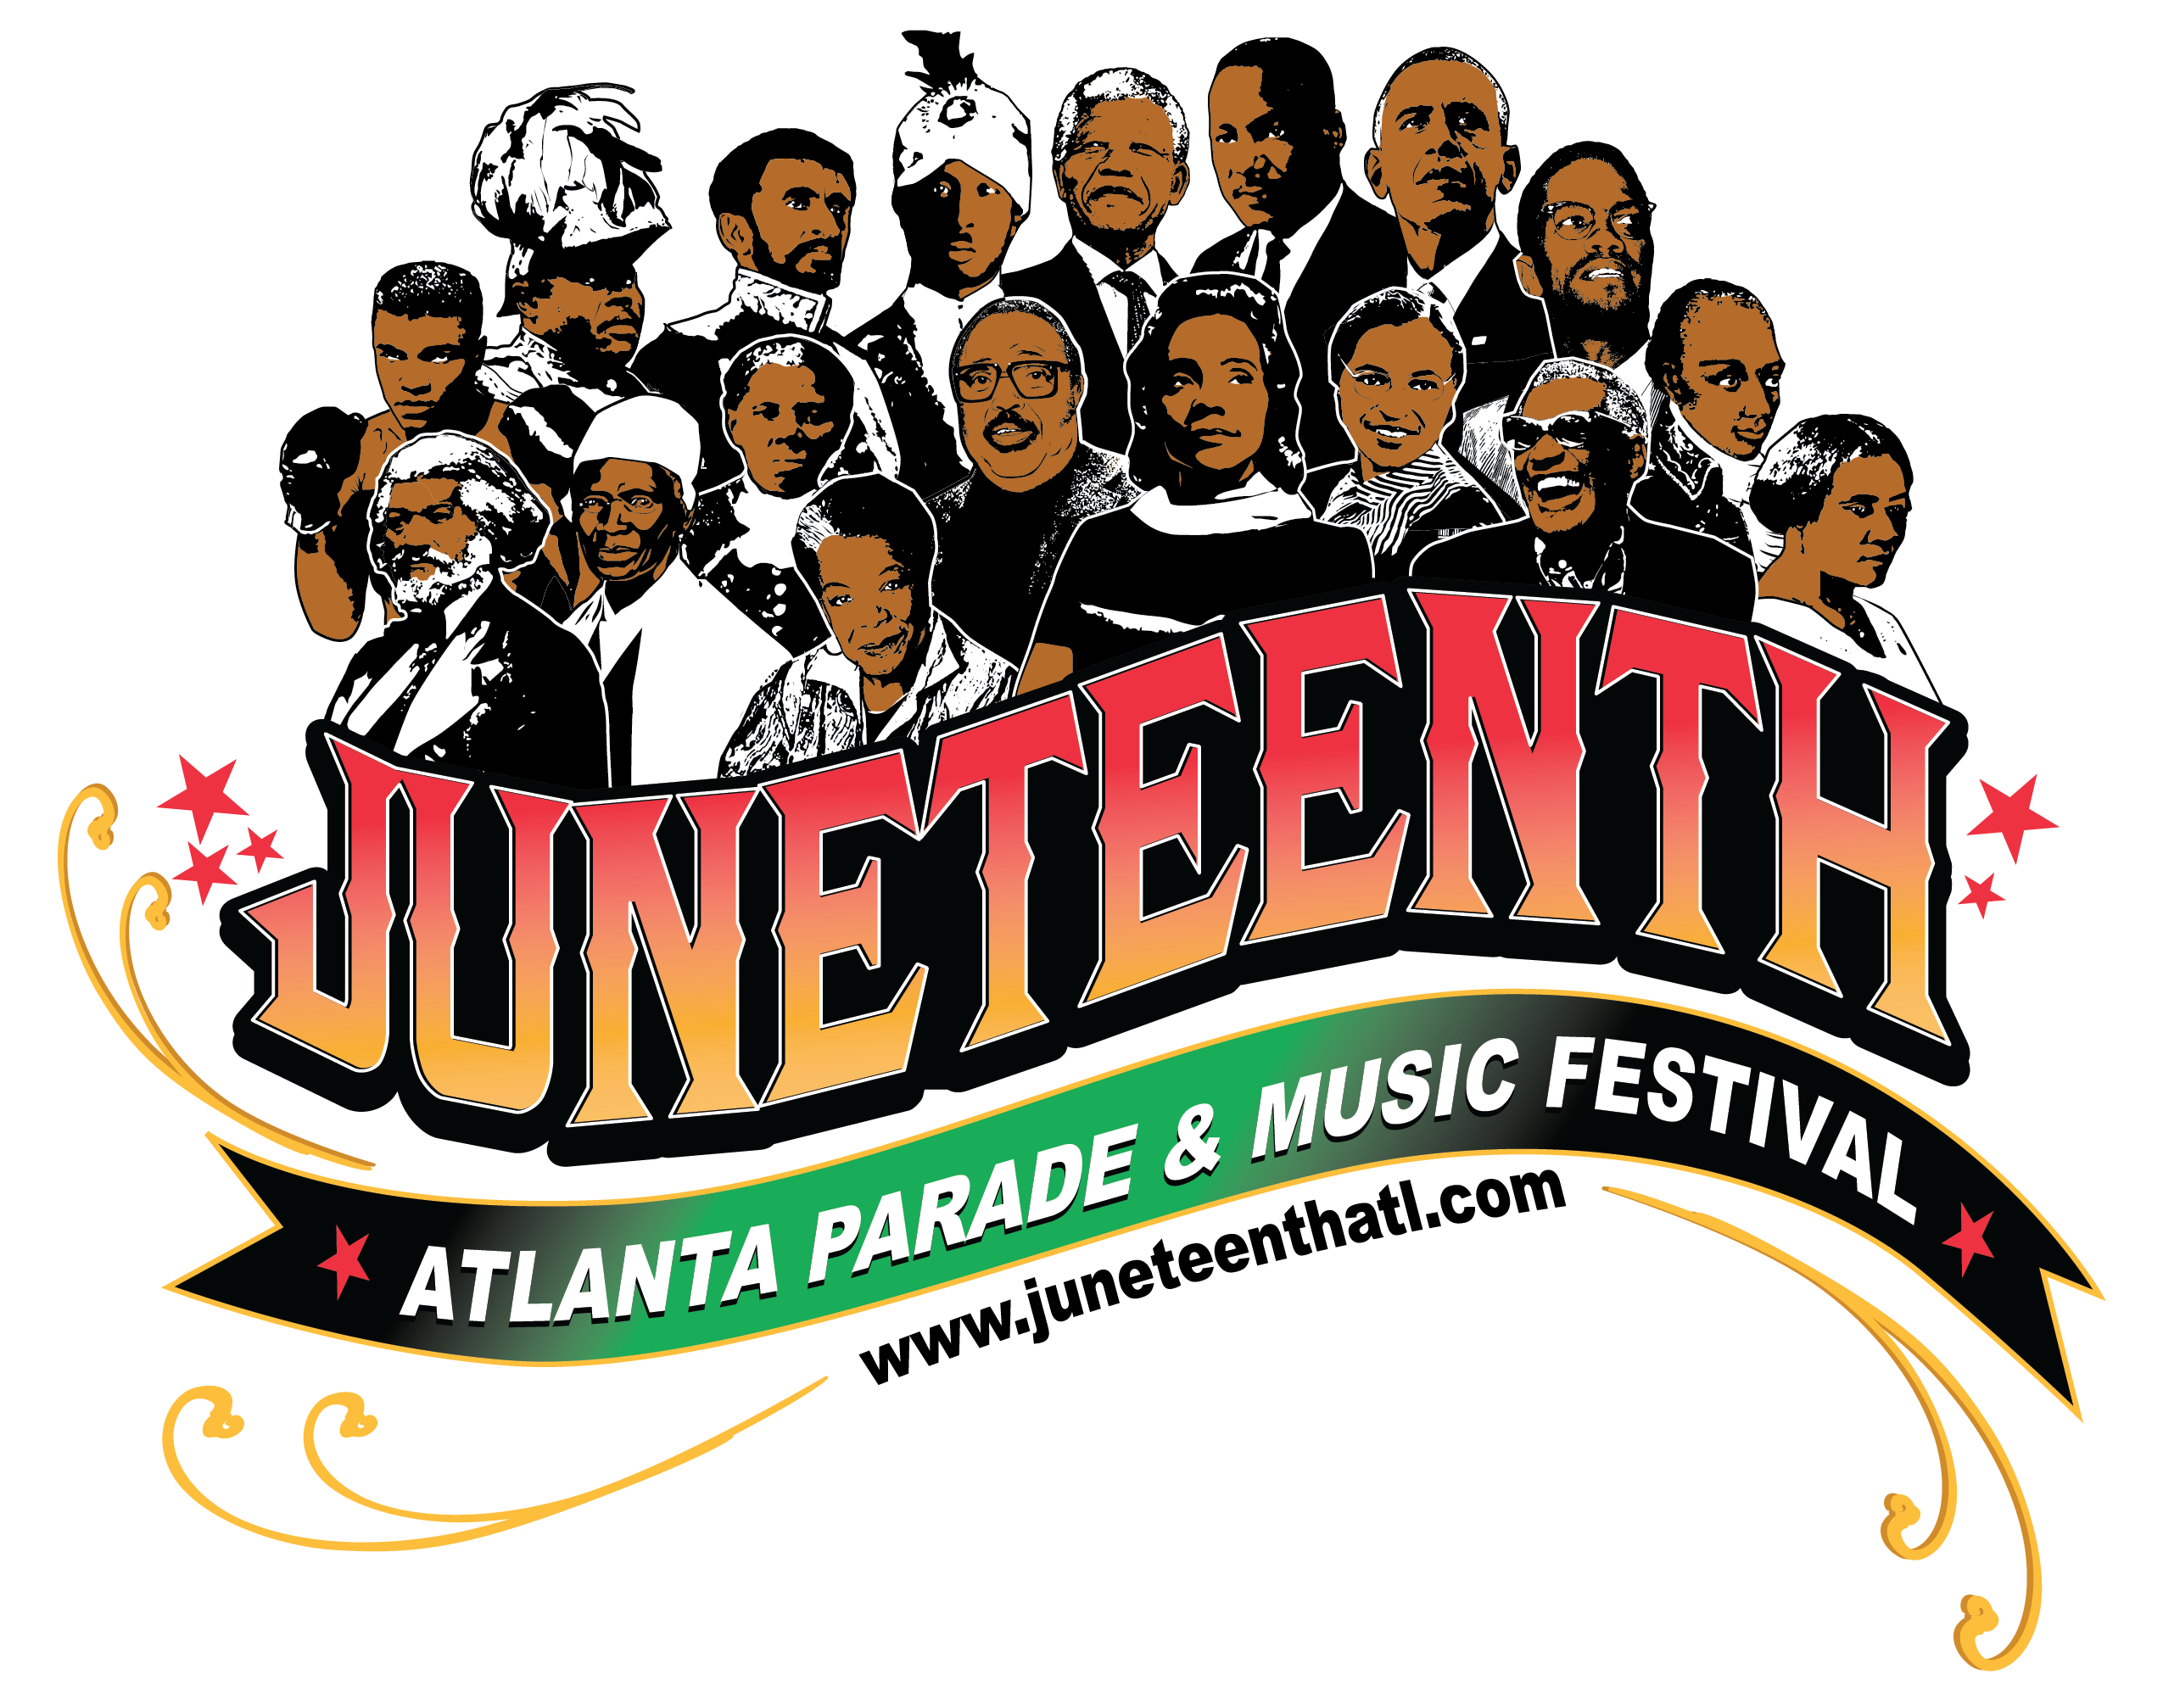 Juneteenth Logo